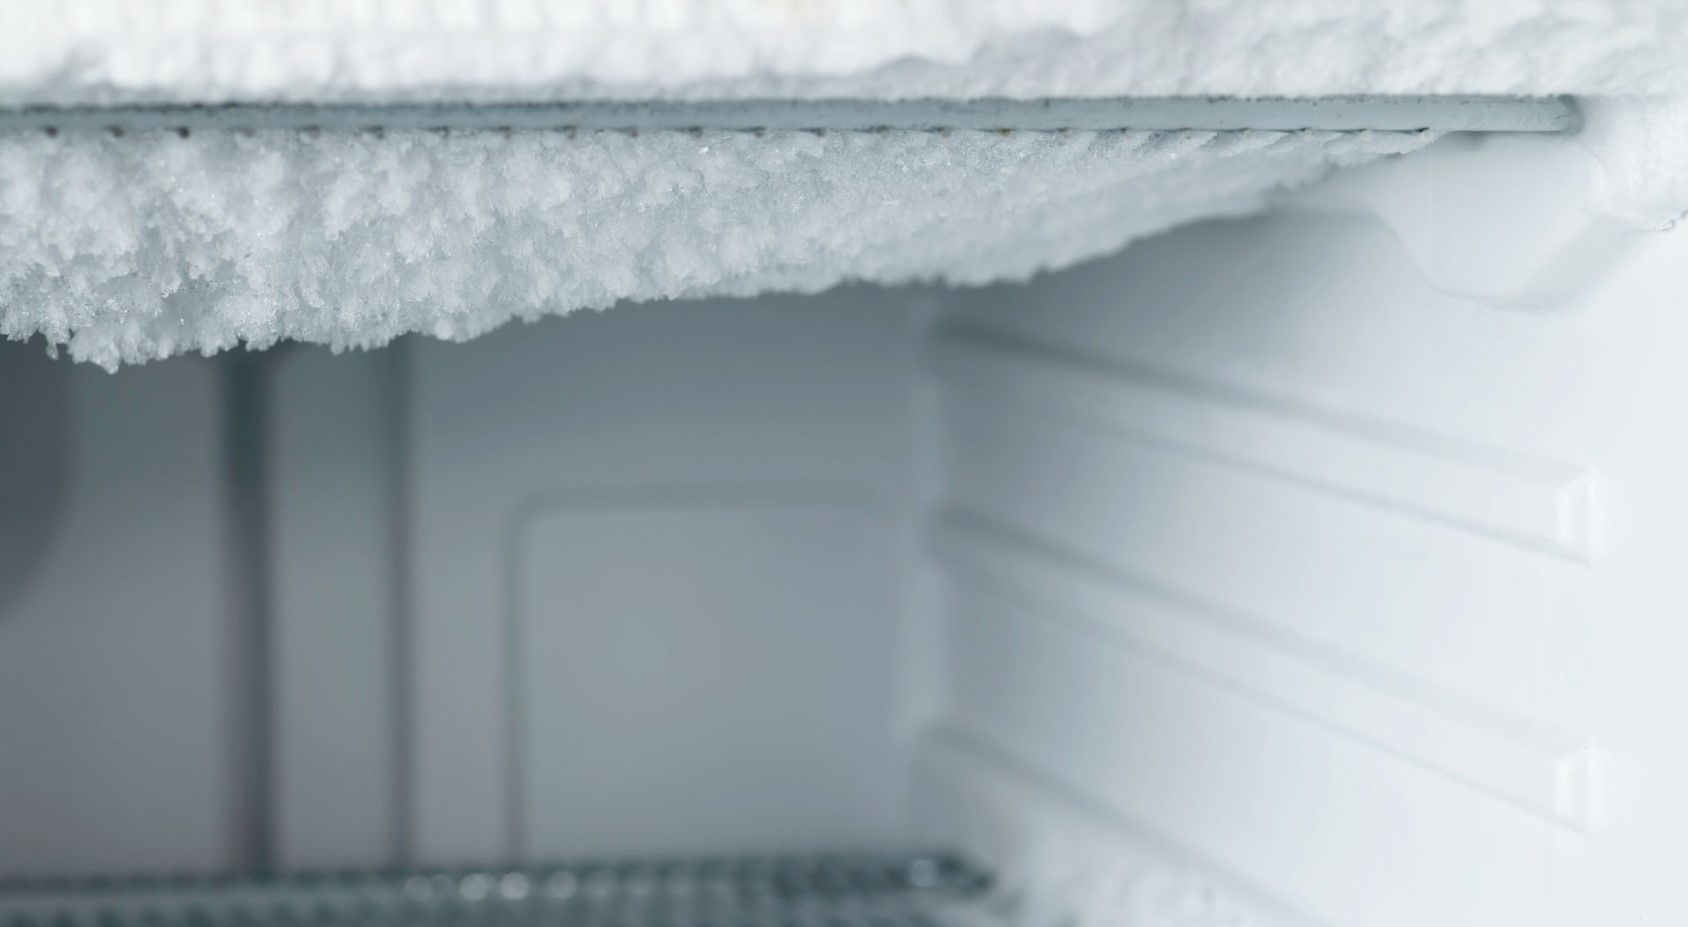 Limpieza profunda: estrategias para un congelador sin hielo